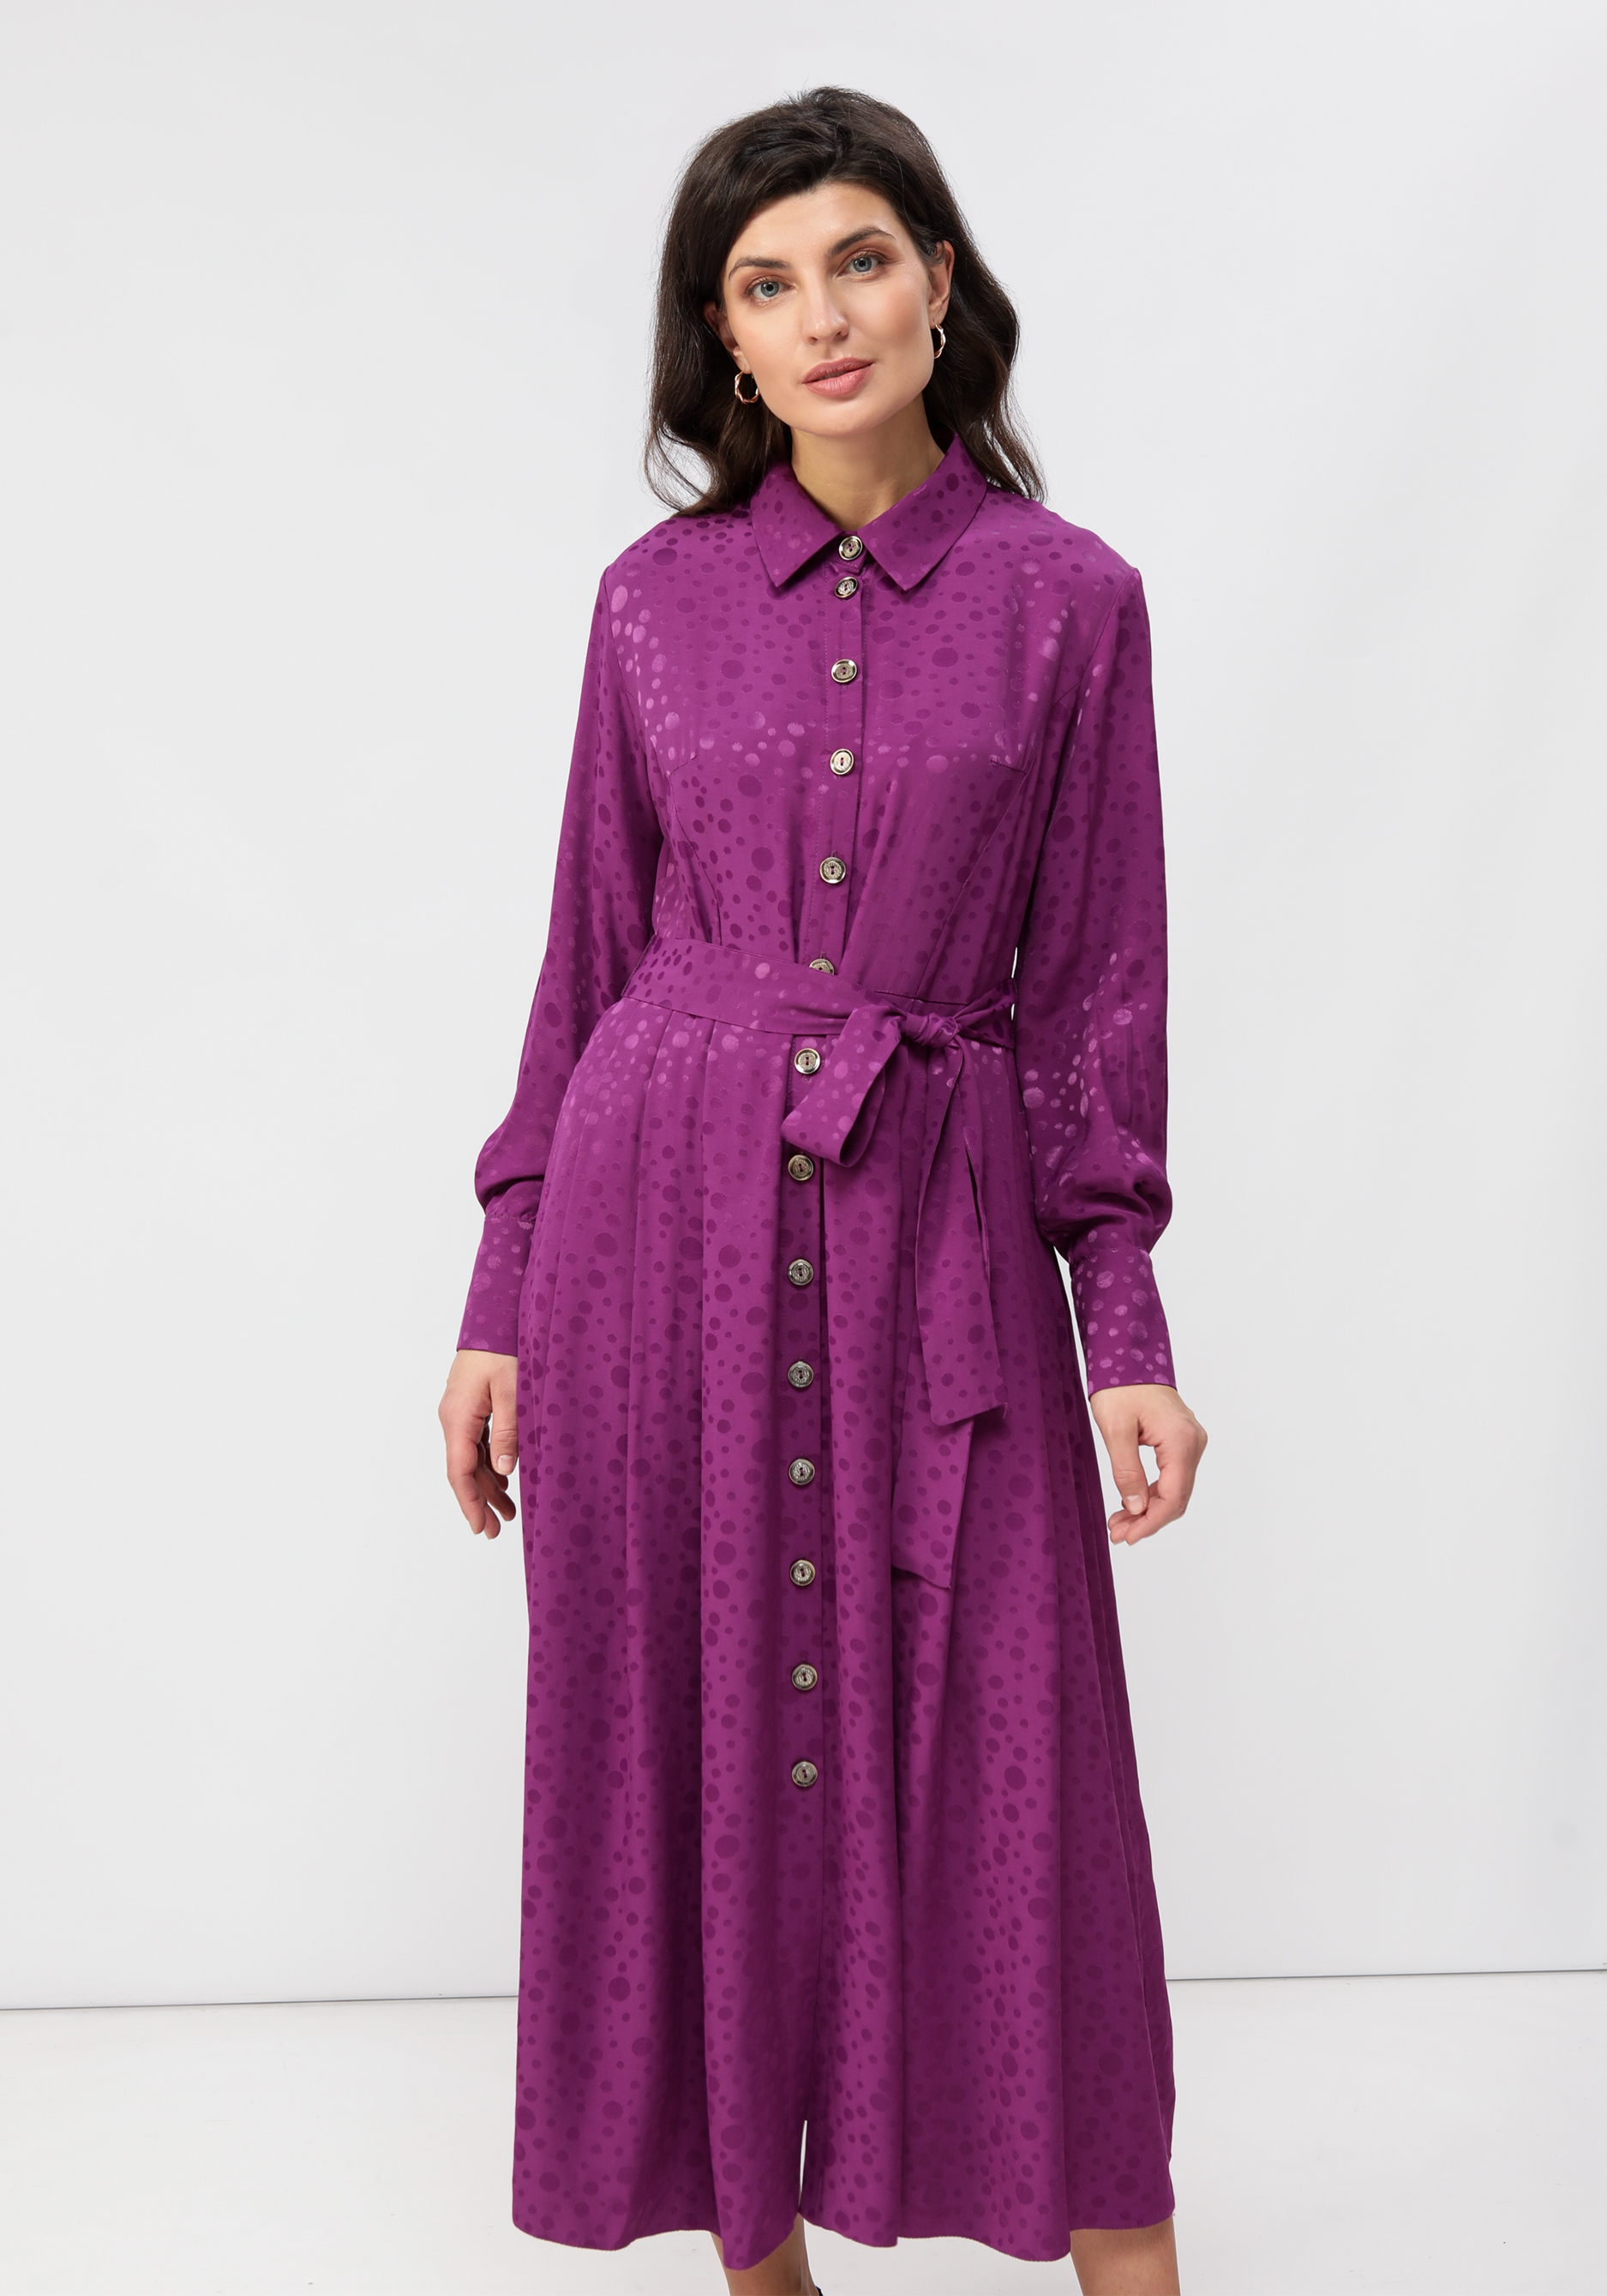 Платье на пуговицах со складками на юбке Vivienne Mare, цвет фиолетовый, размер 50 - фото 3